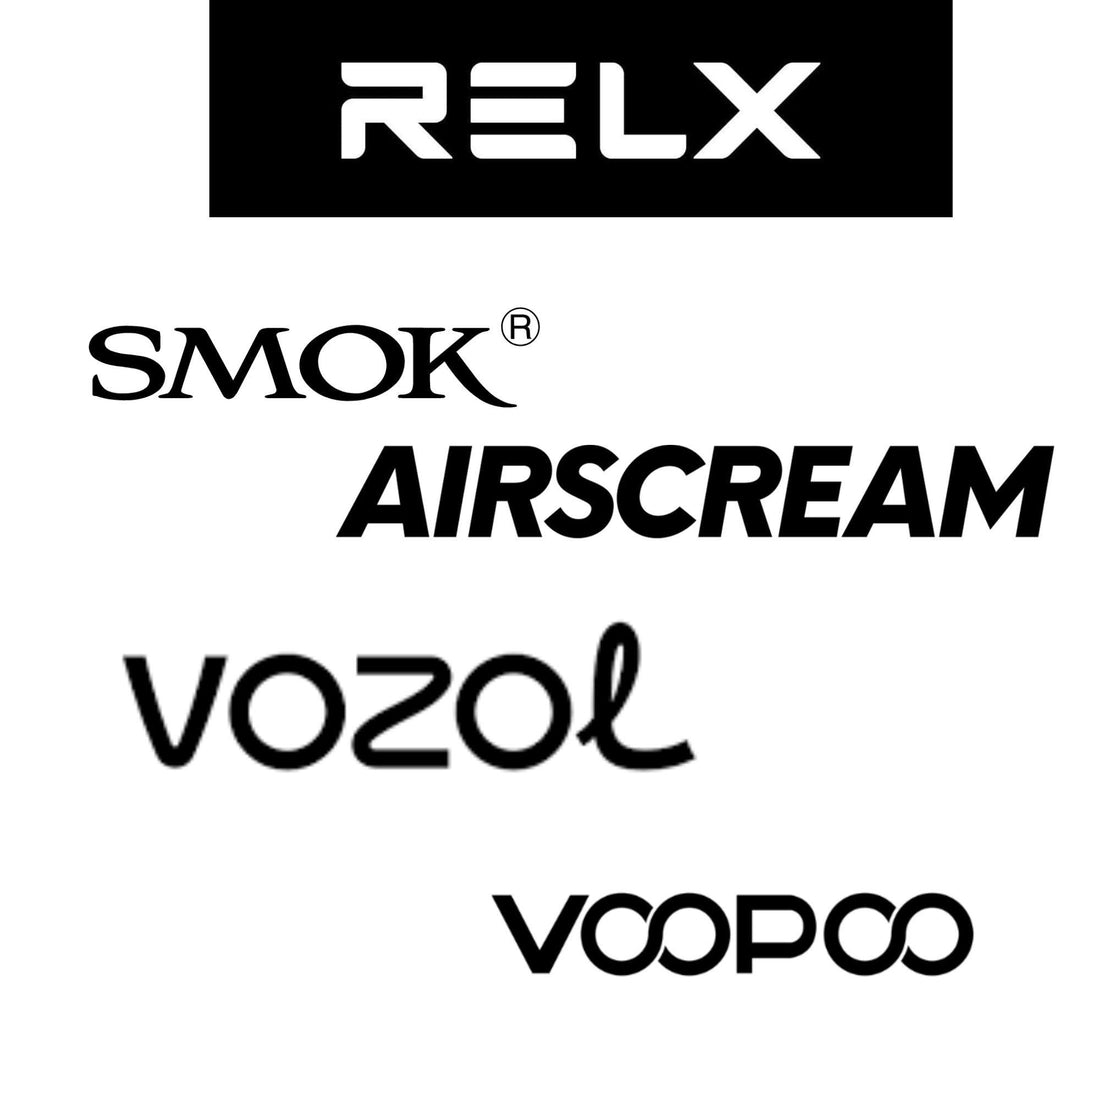 Various disposable vape brand logos